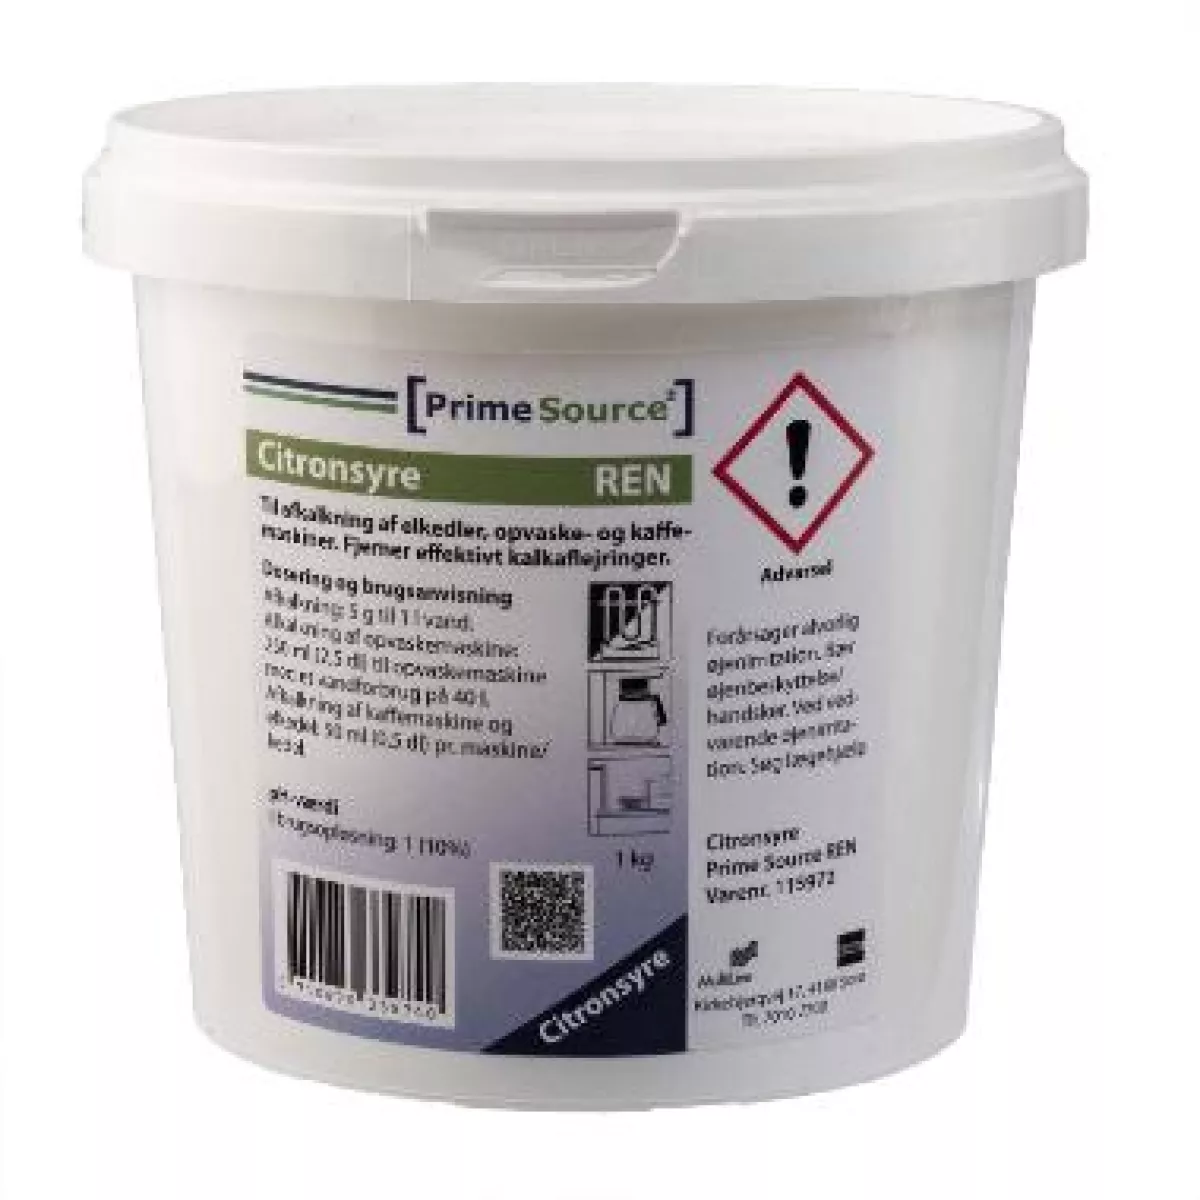 #1 - Prime source citronsyre pulver afkalkning 1 kg